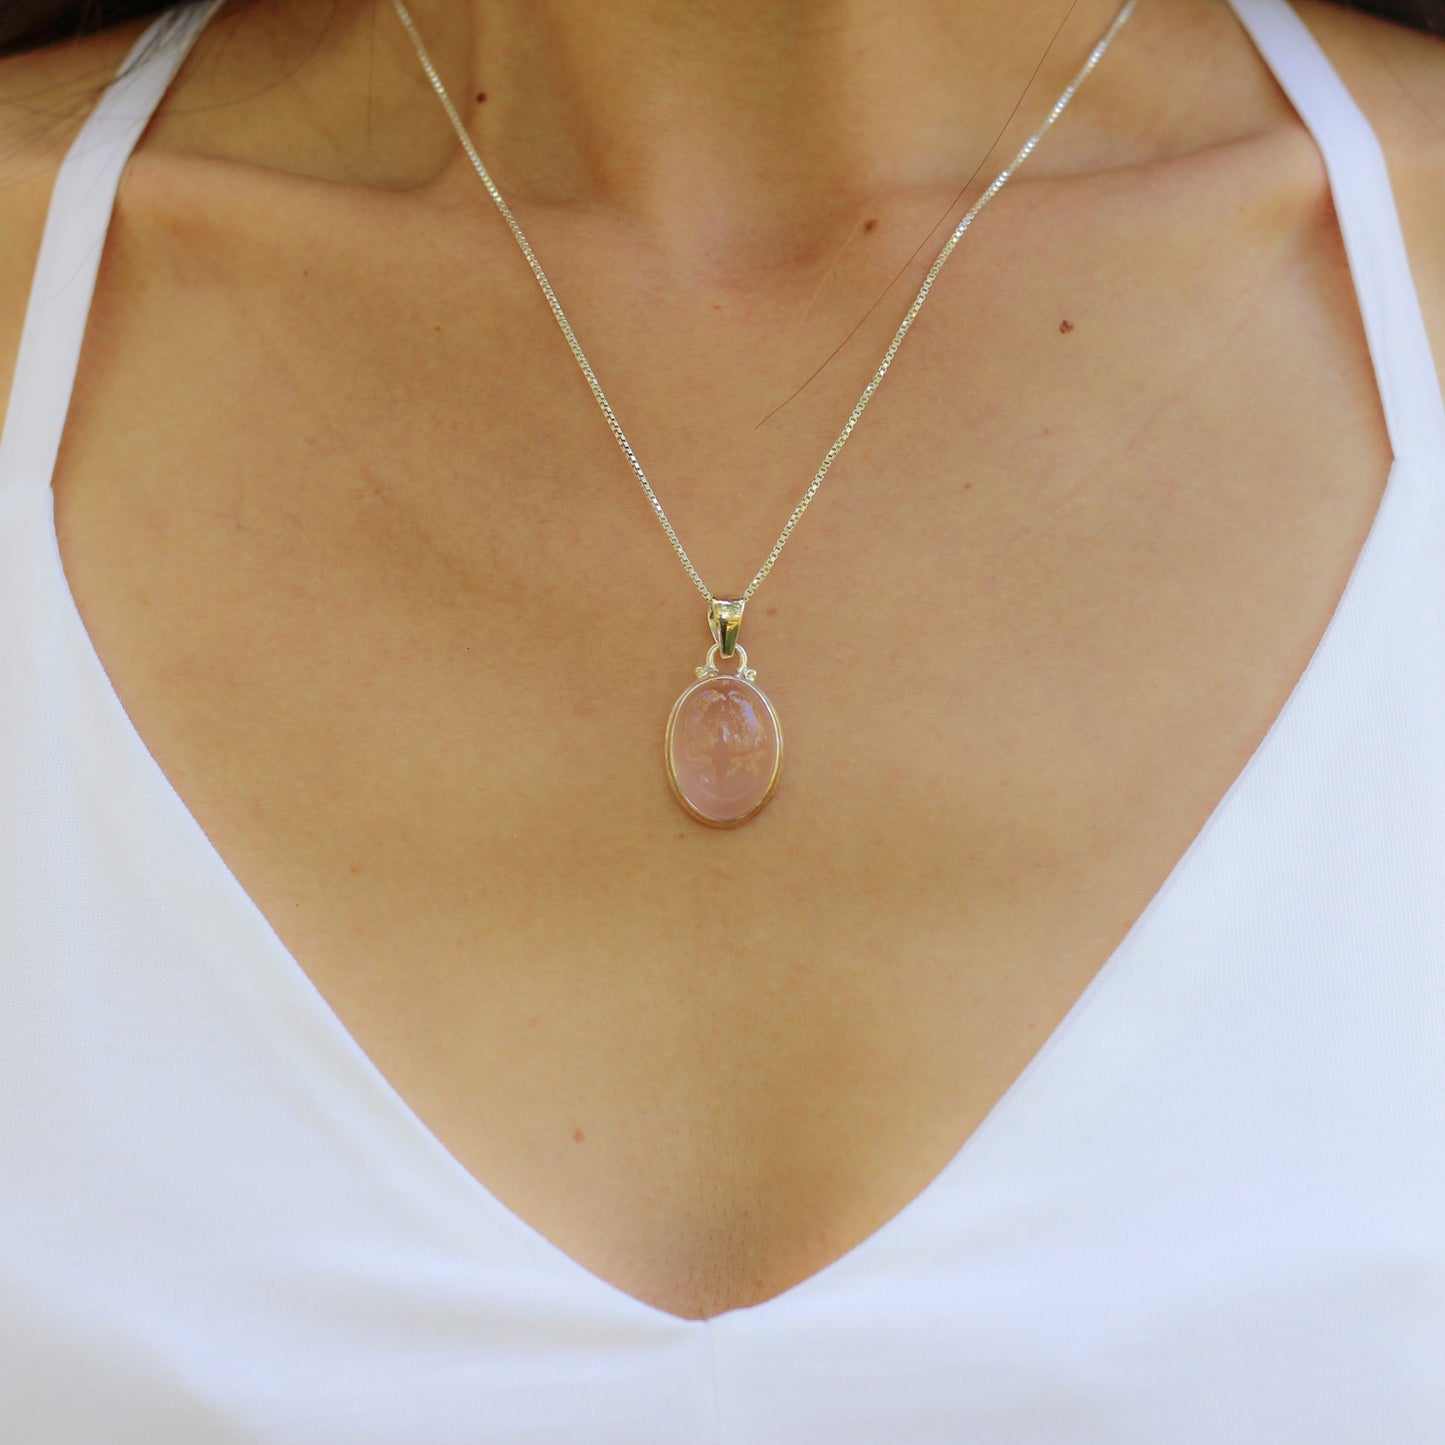 Collier et pendentif "Tendresse du Coeur" en Quartz Rose et Argent 925 - Karma Yoga Shop